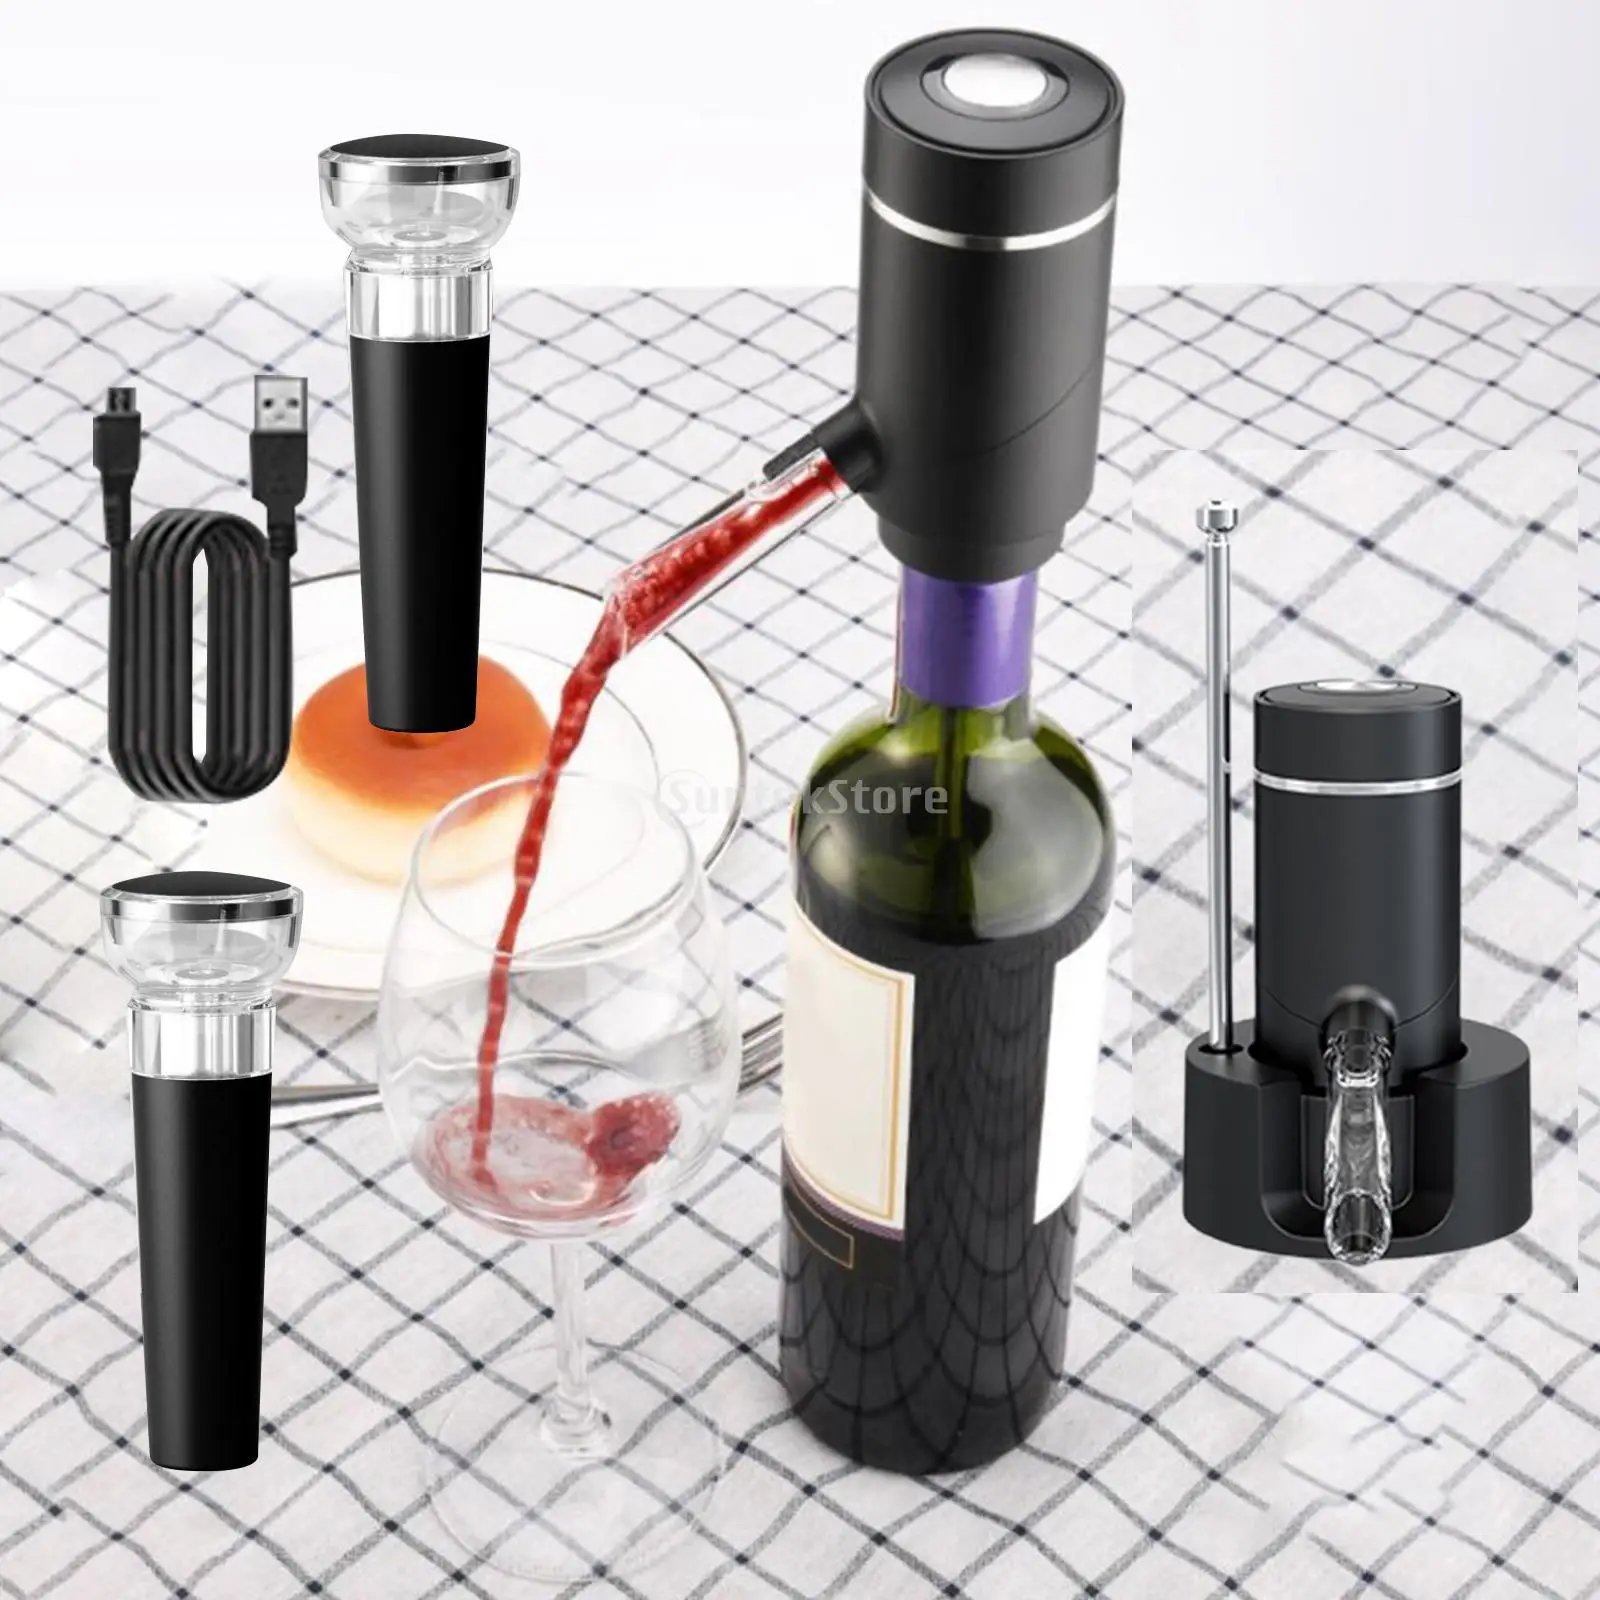 

Электрический Графин для вина, диспенсер с основанием, Быстрое приспособление, автоматический графин для бара, вечеринки, кухни